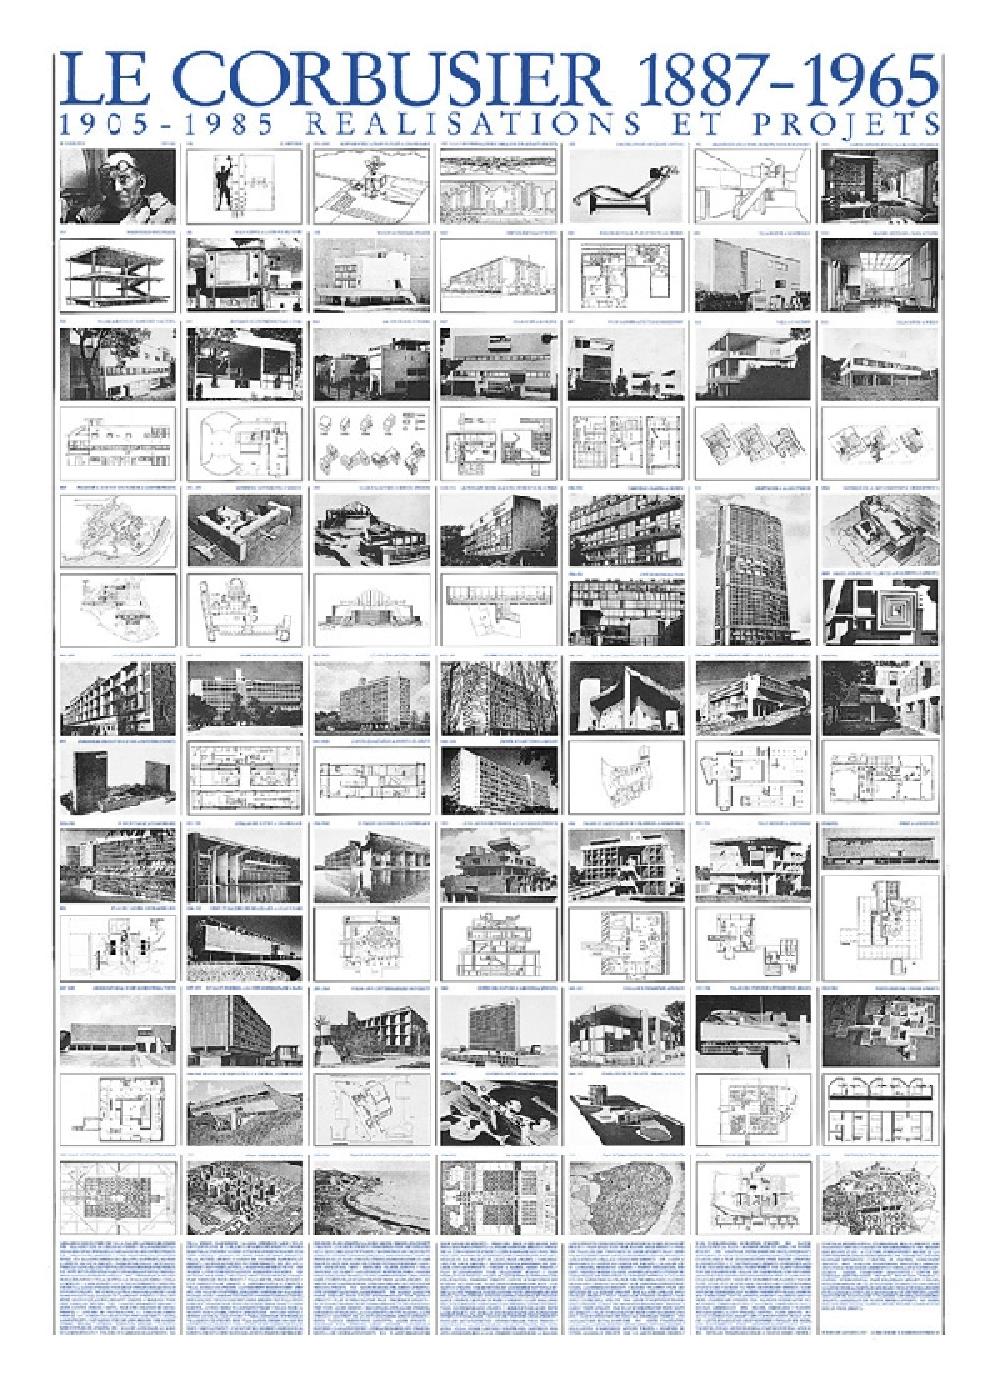 Le Corbusier - Réalisations et projets (Affiche)